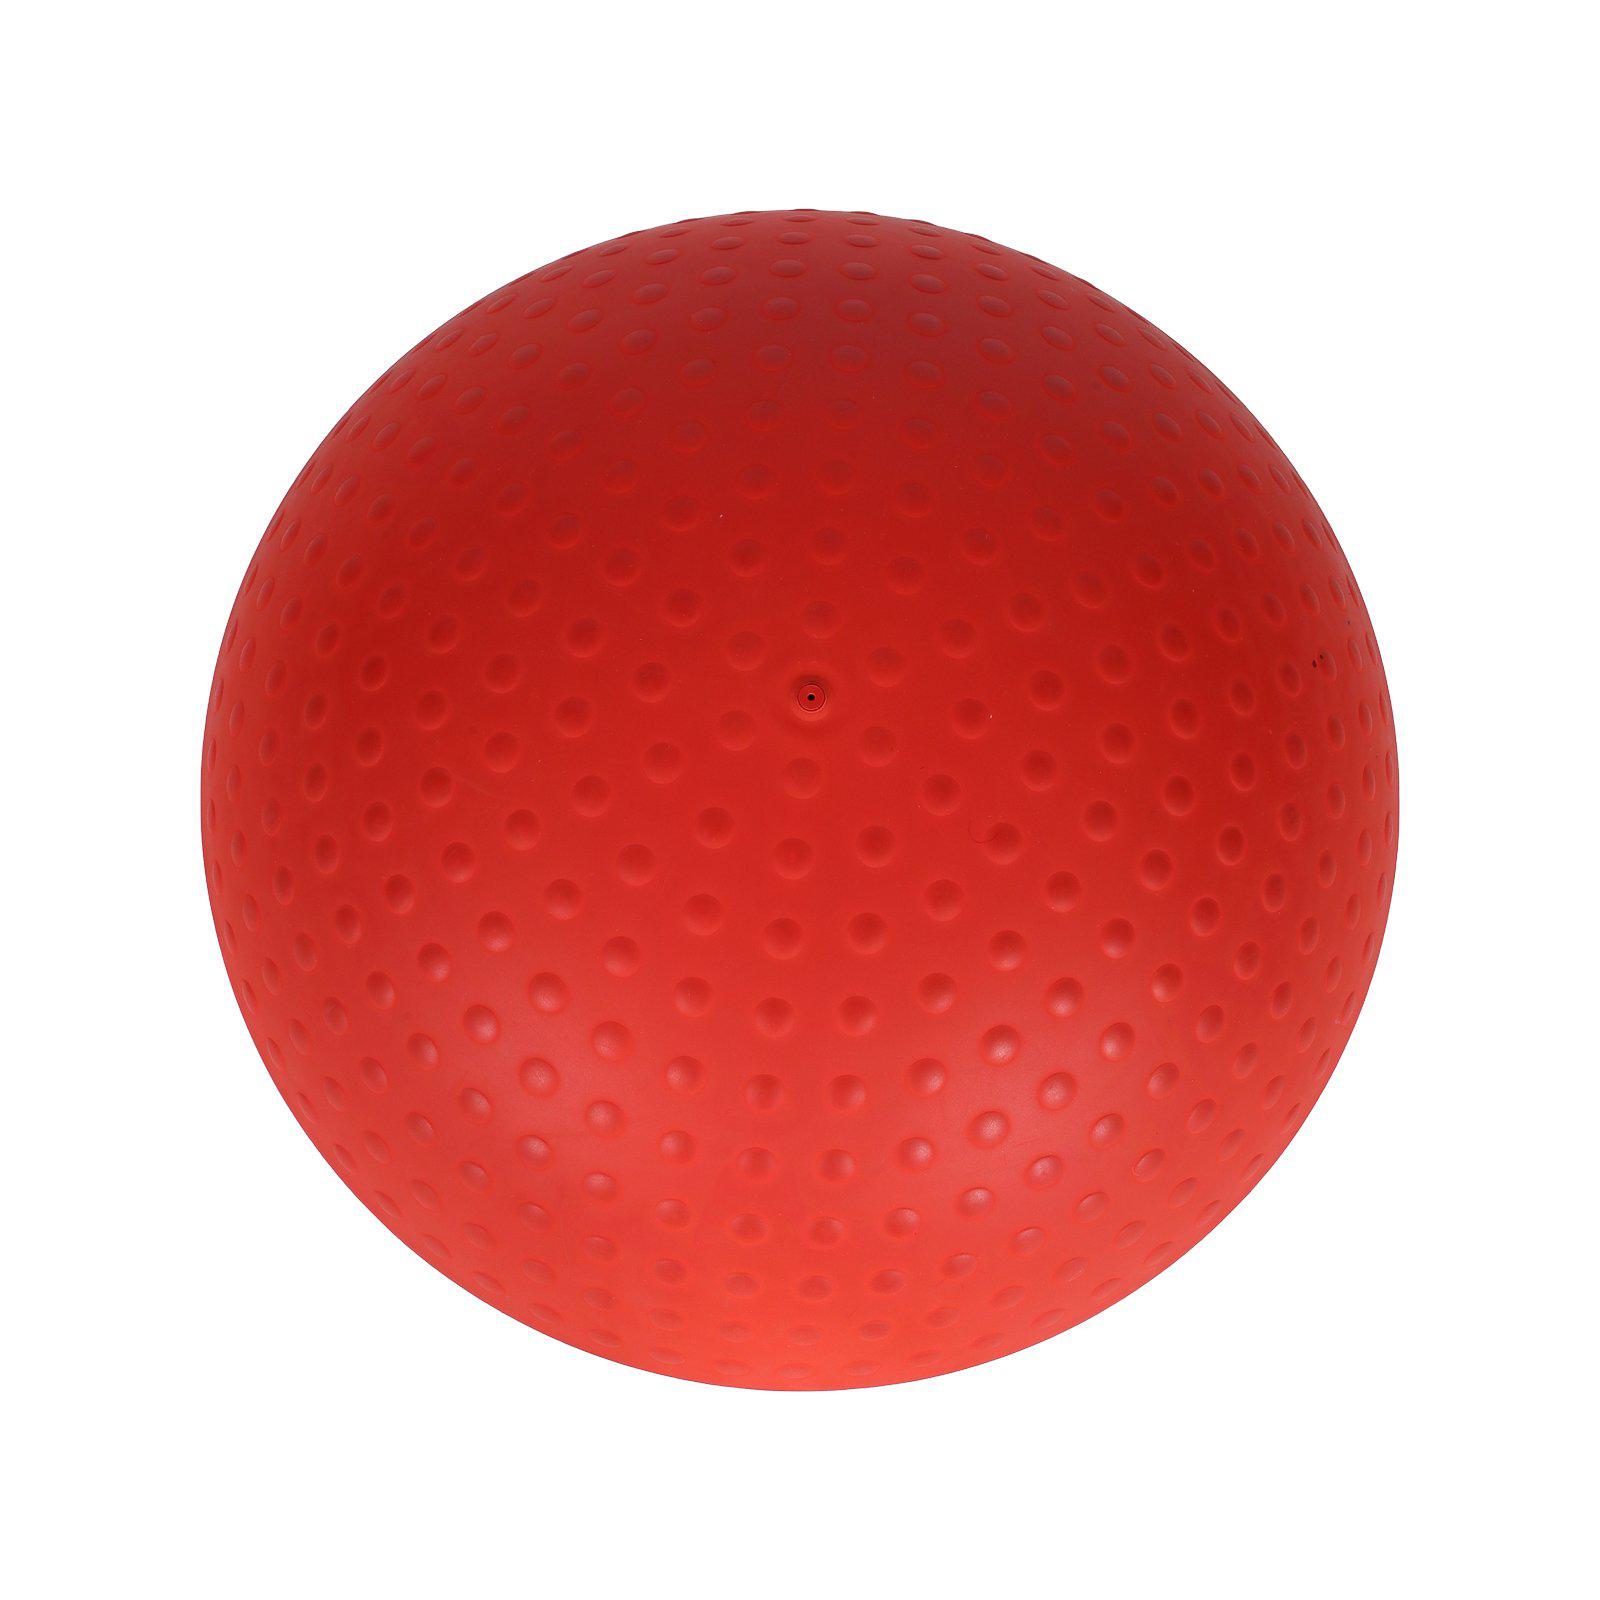 Tabouret gonflable design Ballo Humanscale occasion - Rouge et Blanc - 56 x 48 cm-Bluedigo